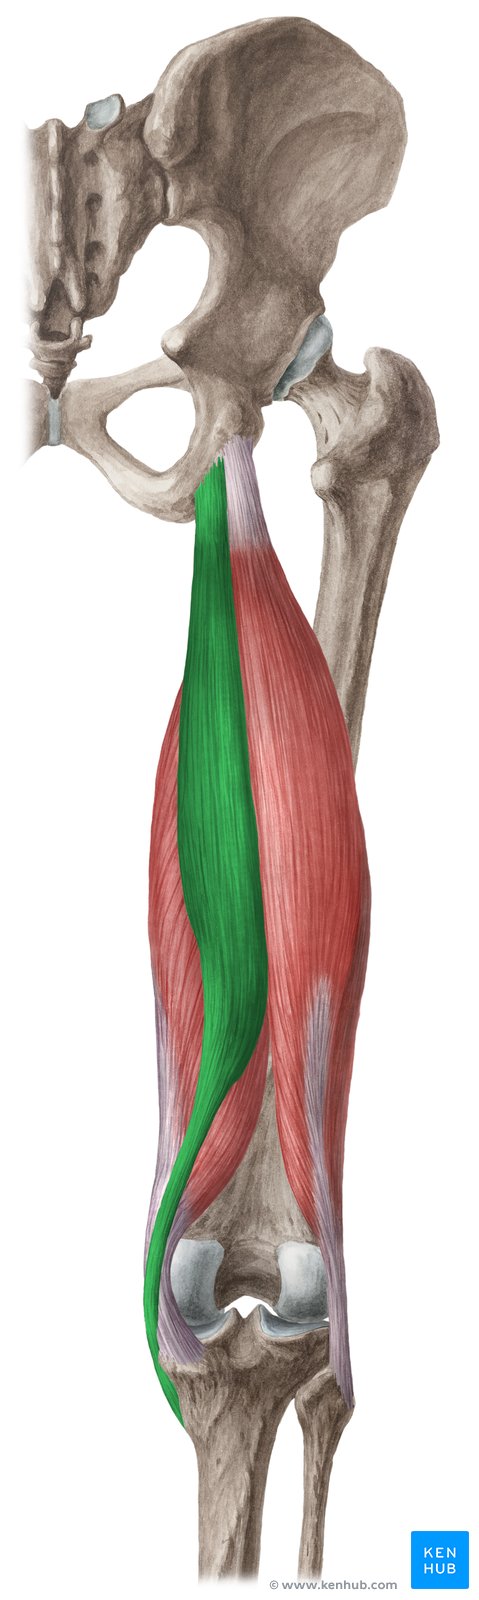 Musculus semitendinosus, ein zur ischiocruralen Muskulatur gehörender Muskel